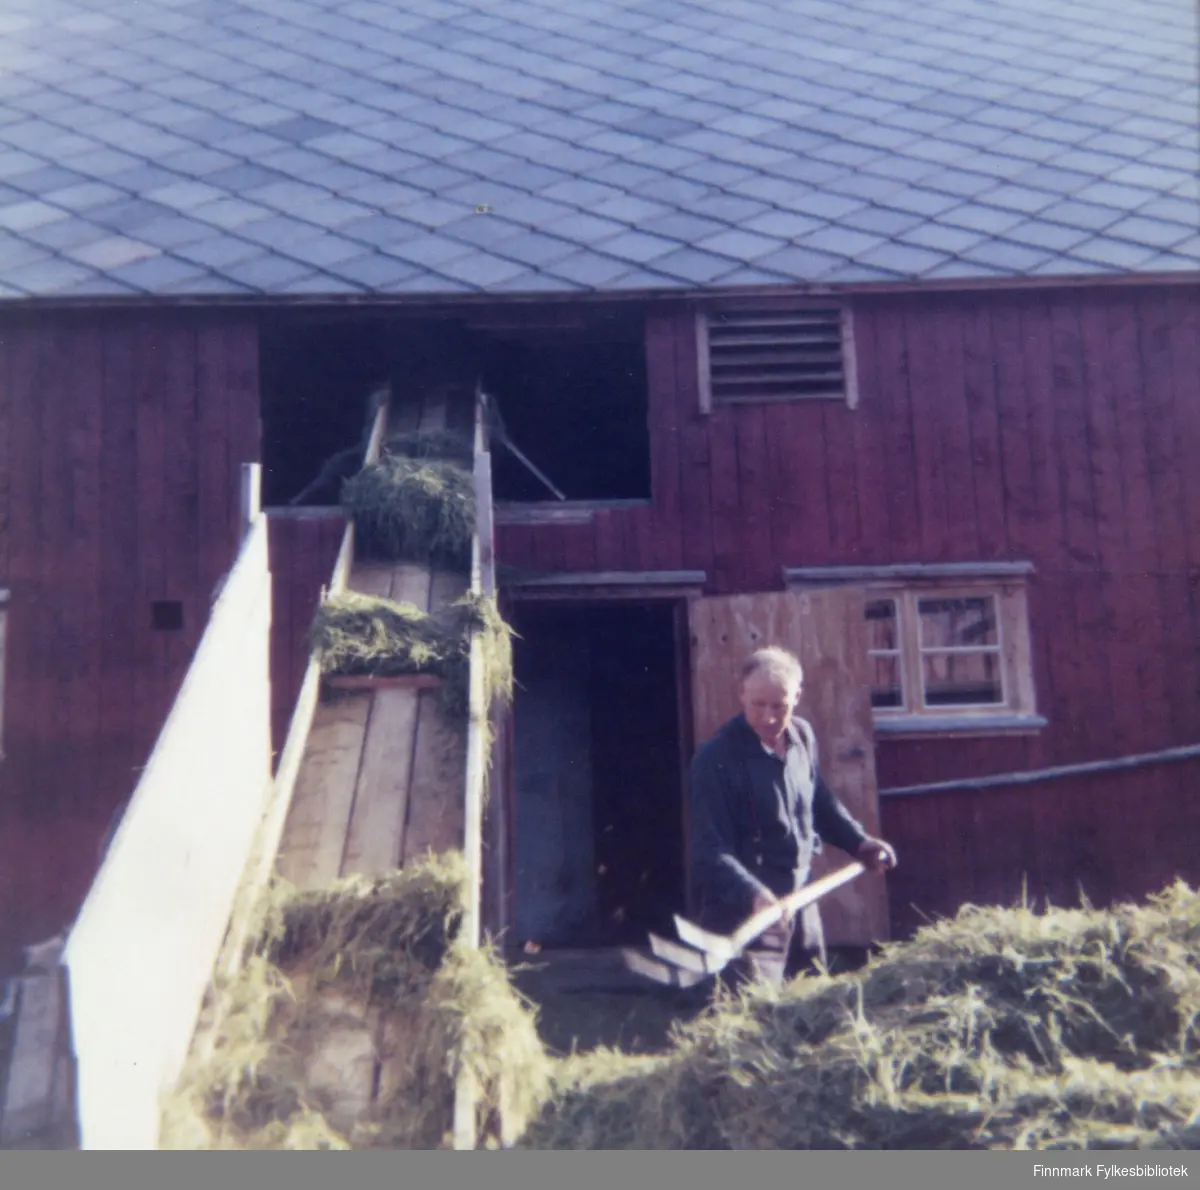 Egil Granås, trolig en venn av Kristian Wisløff, løfter høy opp på transportbåndet ved hjelp av en høygaffel. I forgrunnen ser vi et lass med høy og i bakgrunnen en stor rød gårdsbygning med skifertak. Ca.1965.